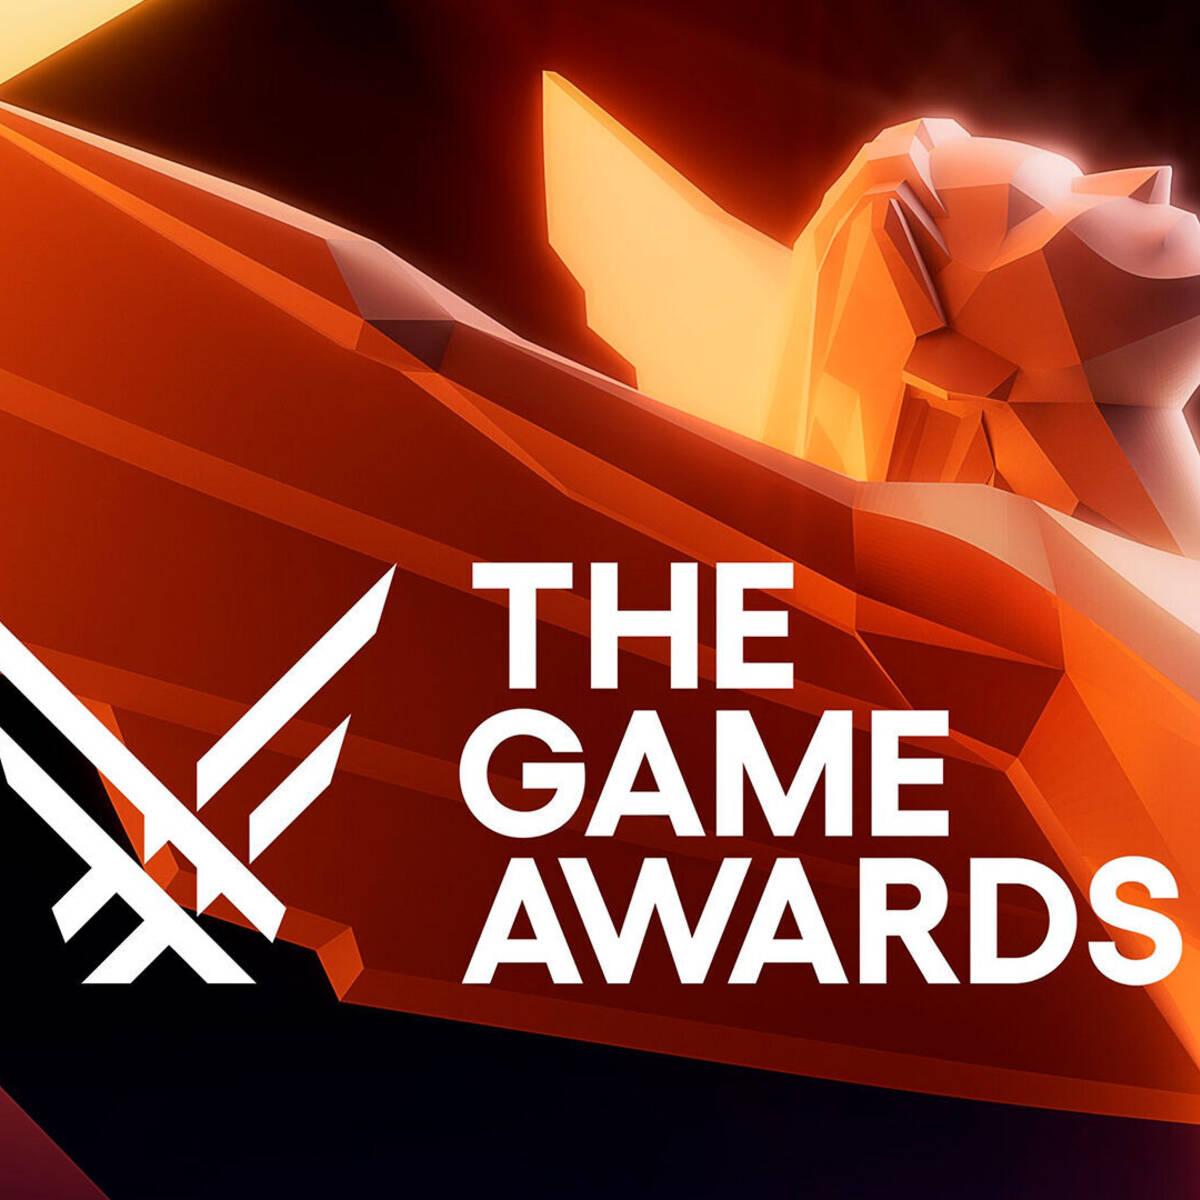 Cuánto dura The Game Awards 2023? Será casi igual de larga que en 2022